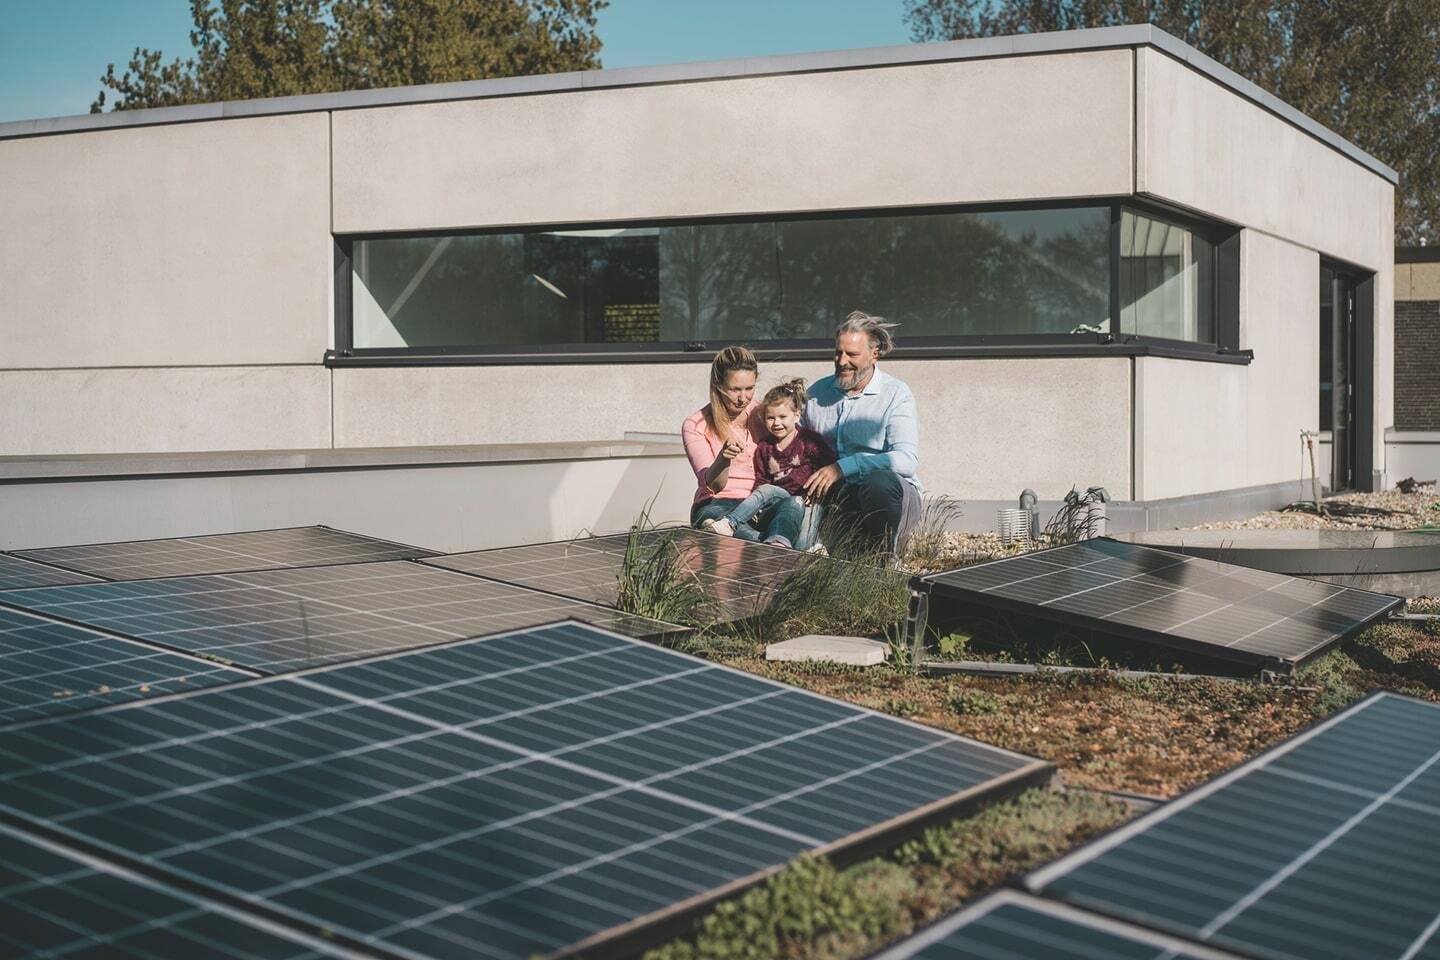 Mutter, Vater und Kind sitzen auf dem Dach eines modernen Wohnhauses und betrachten eine Solaranlage.